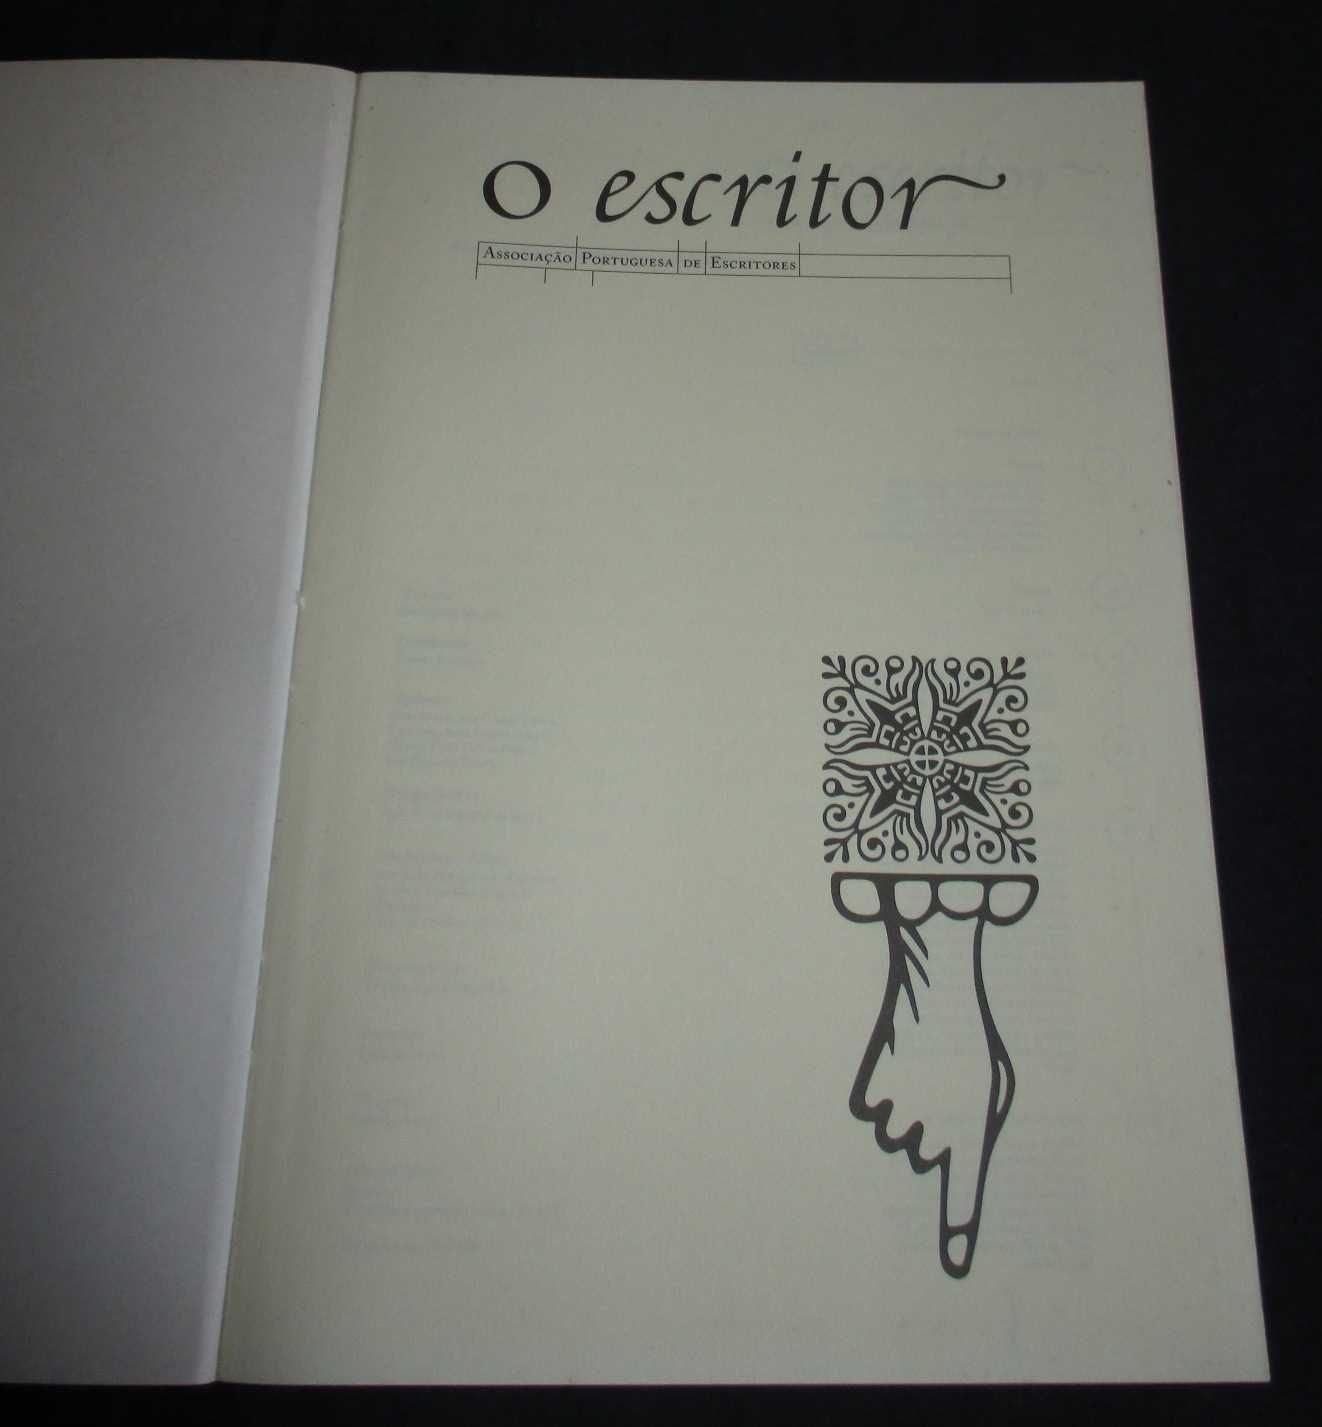 O Escritor Nº 1 Revista da Associação Portuguesa de Escritores 1993